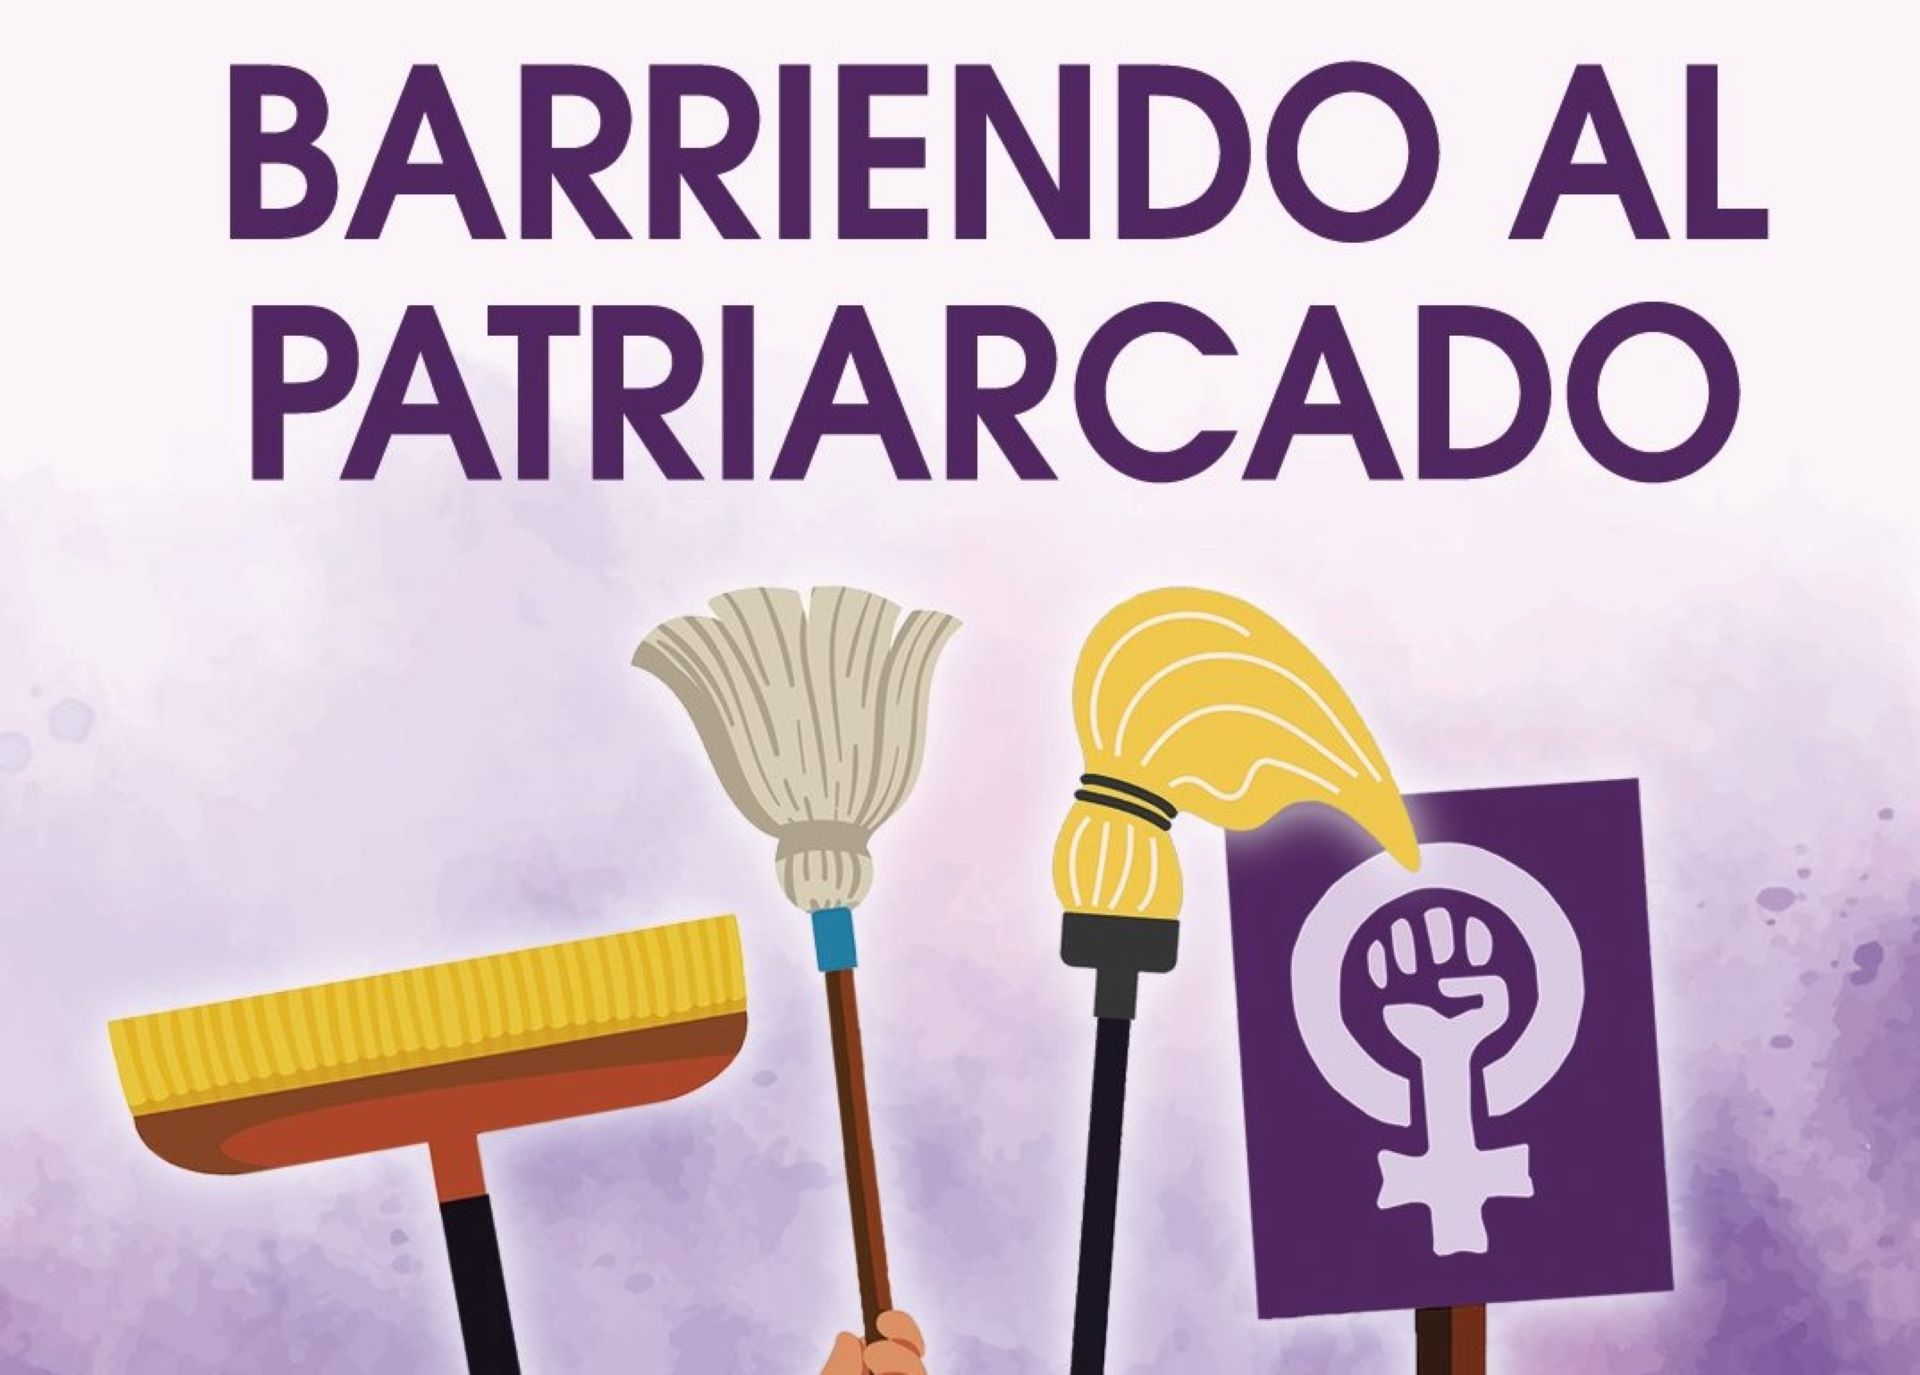 Polémica por una campaña del PCE que llama a "barrer al patriarcado" el 8 de marzo